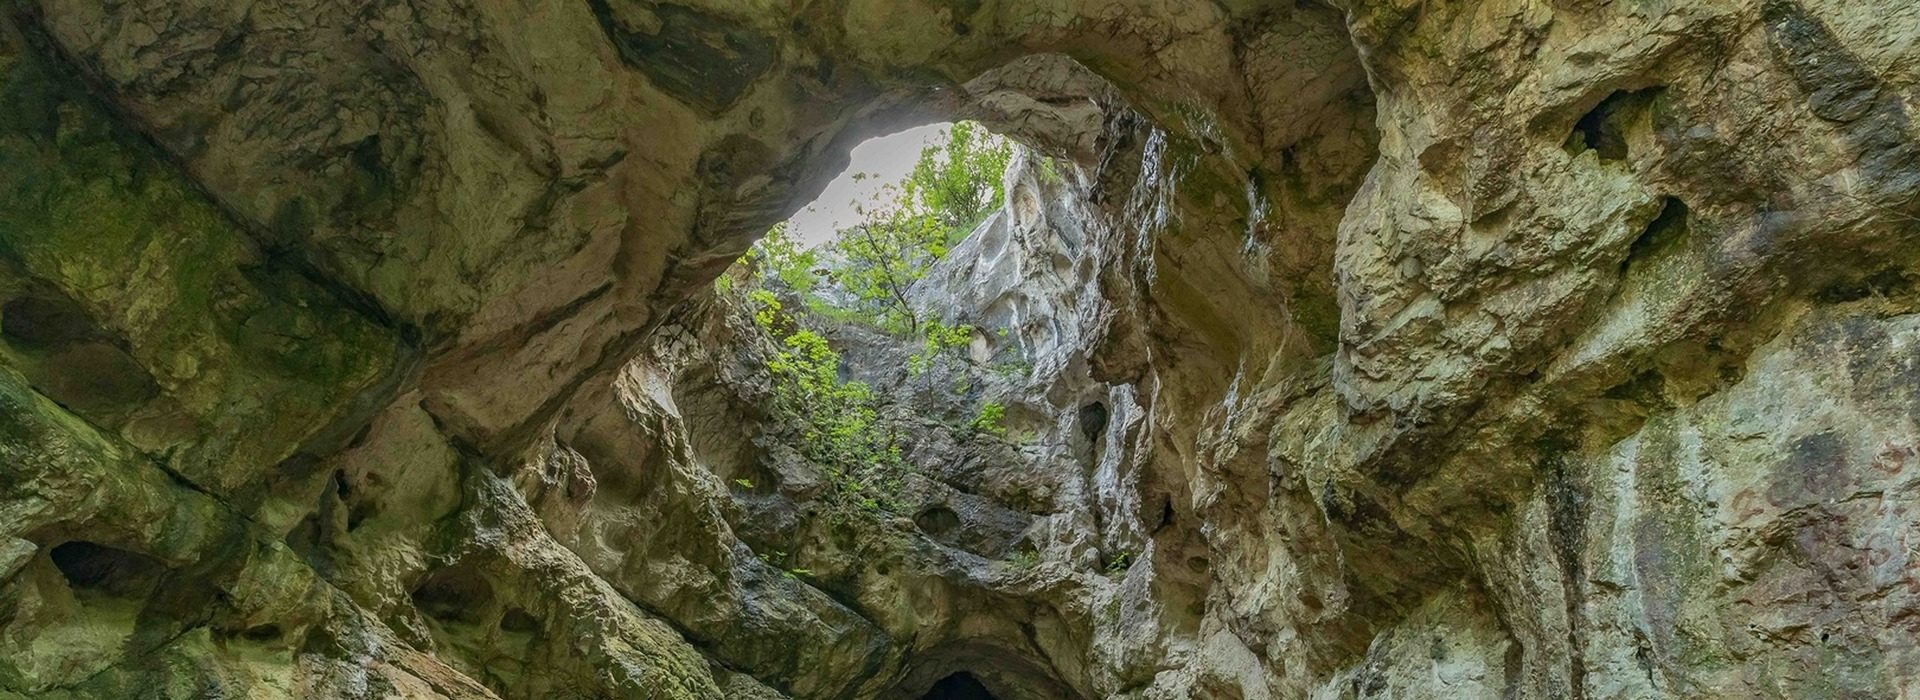 Bajót, Öreg-kő, Jankovich-barlang